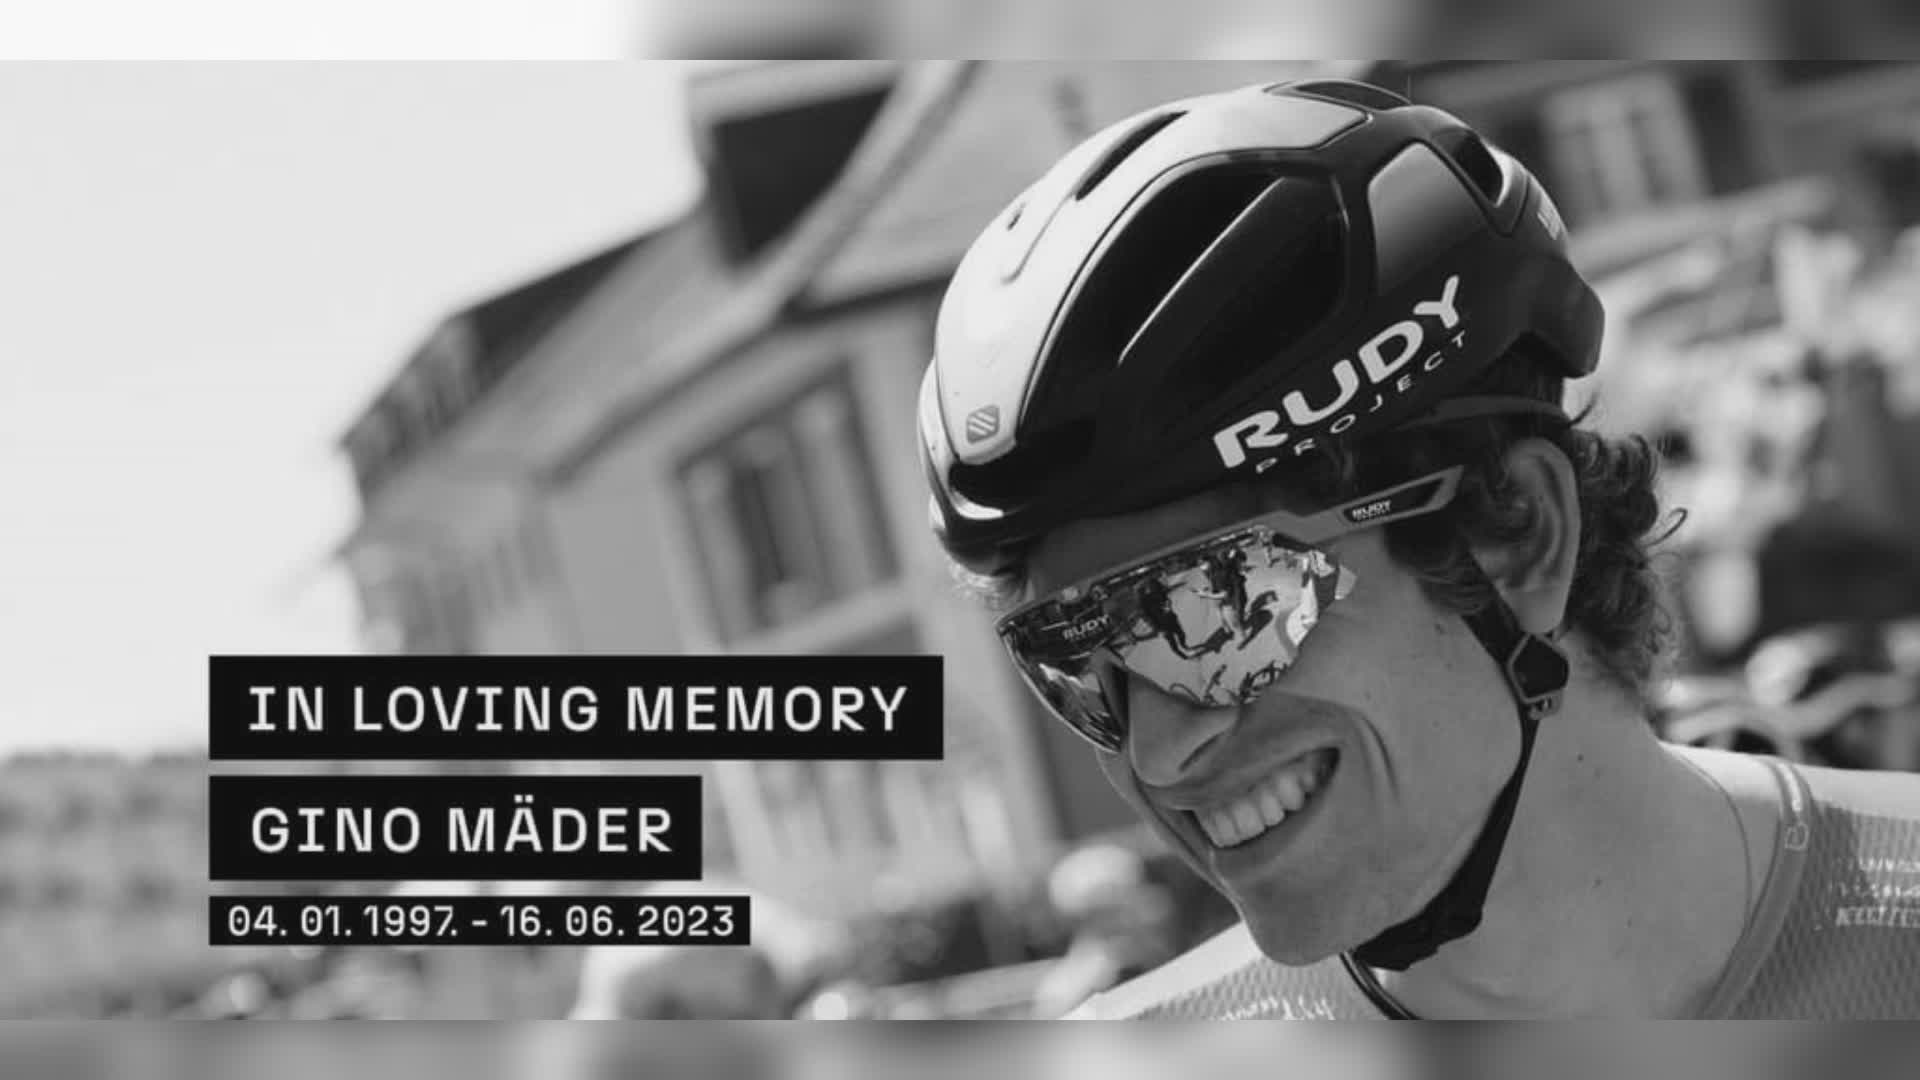 Ciclismo, è morto il 26enne Gino Mader: ieri la caduta in un burrone durante il Giro di Svizzera